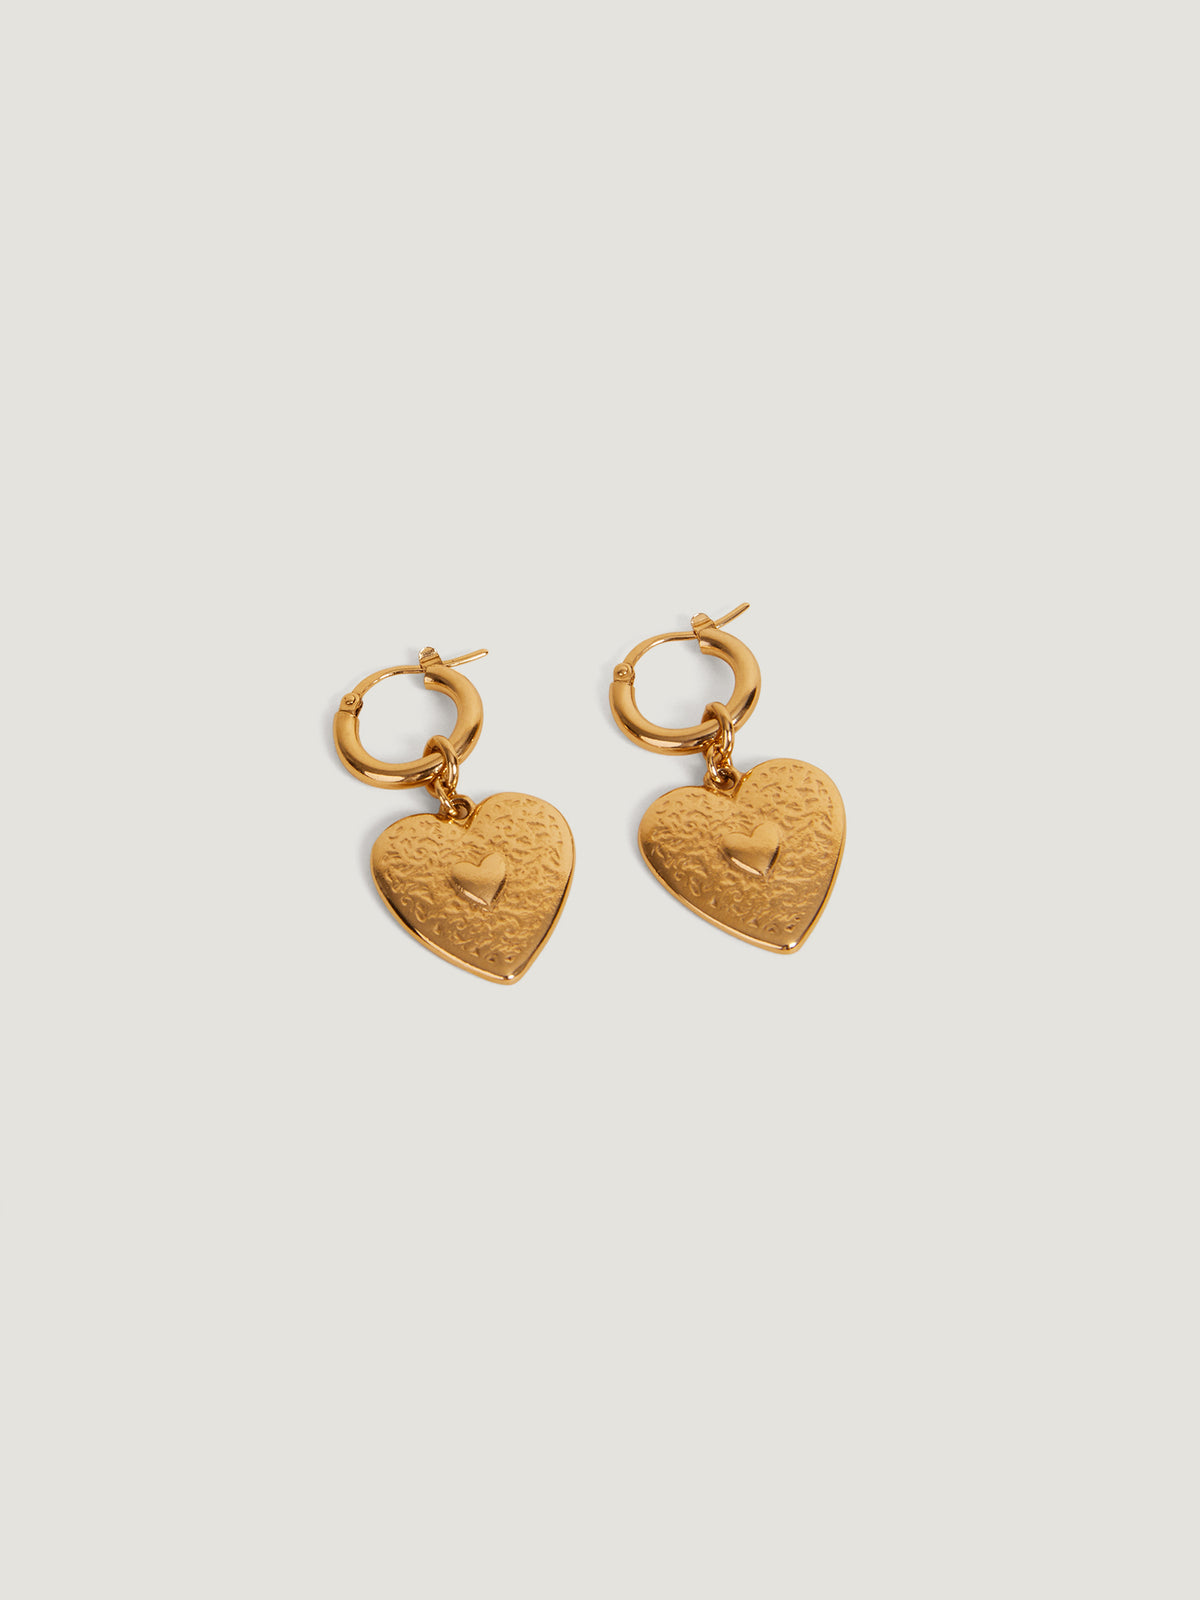 THE SWEETIE HEART EARRINGS – Rimor Jewelry